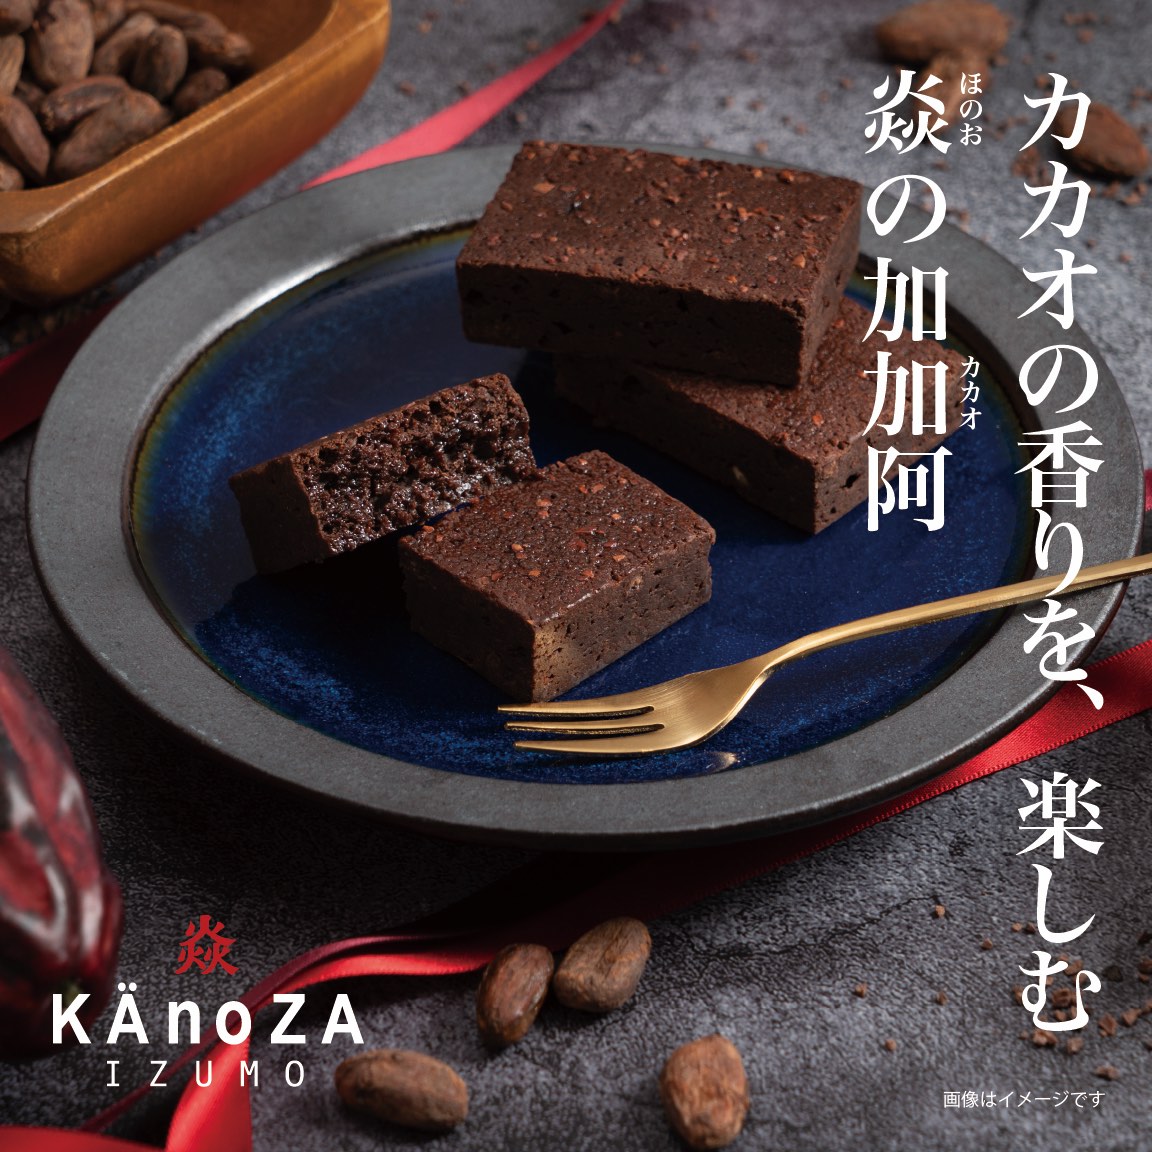 プチギフト 手土産 炎の加加阿（かかお） カノザ KAnoZA 寿製菓 プレゼント ギフト 贈り物 ブラウニー